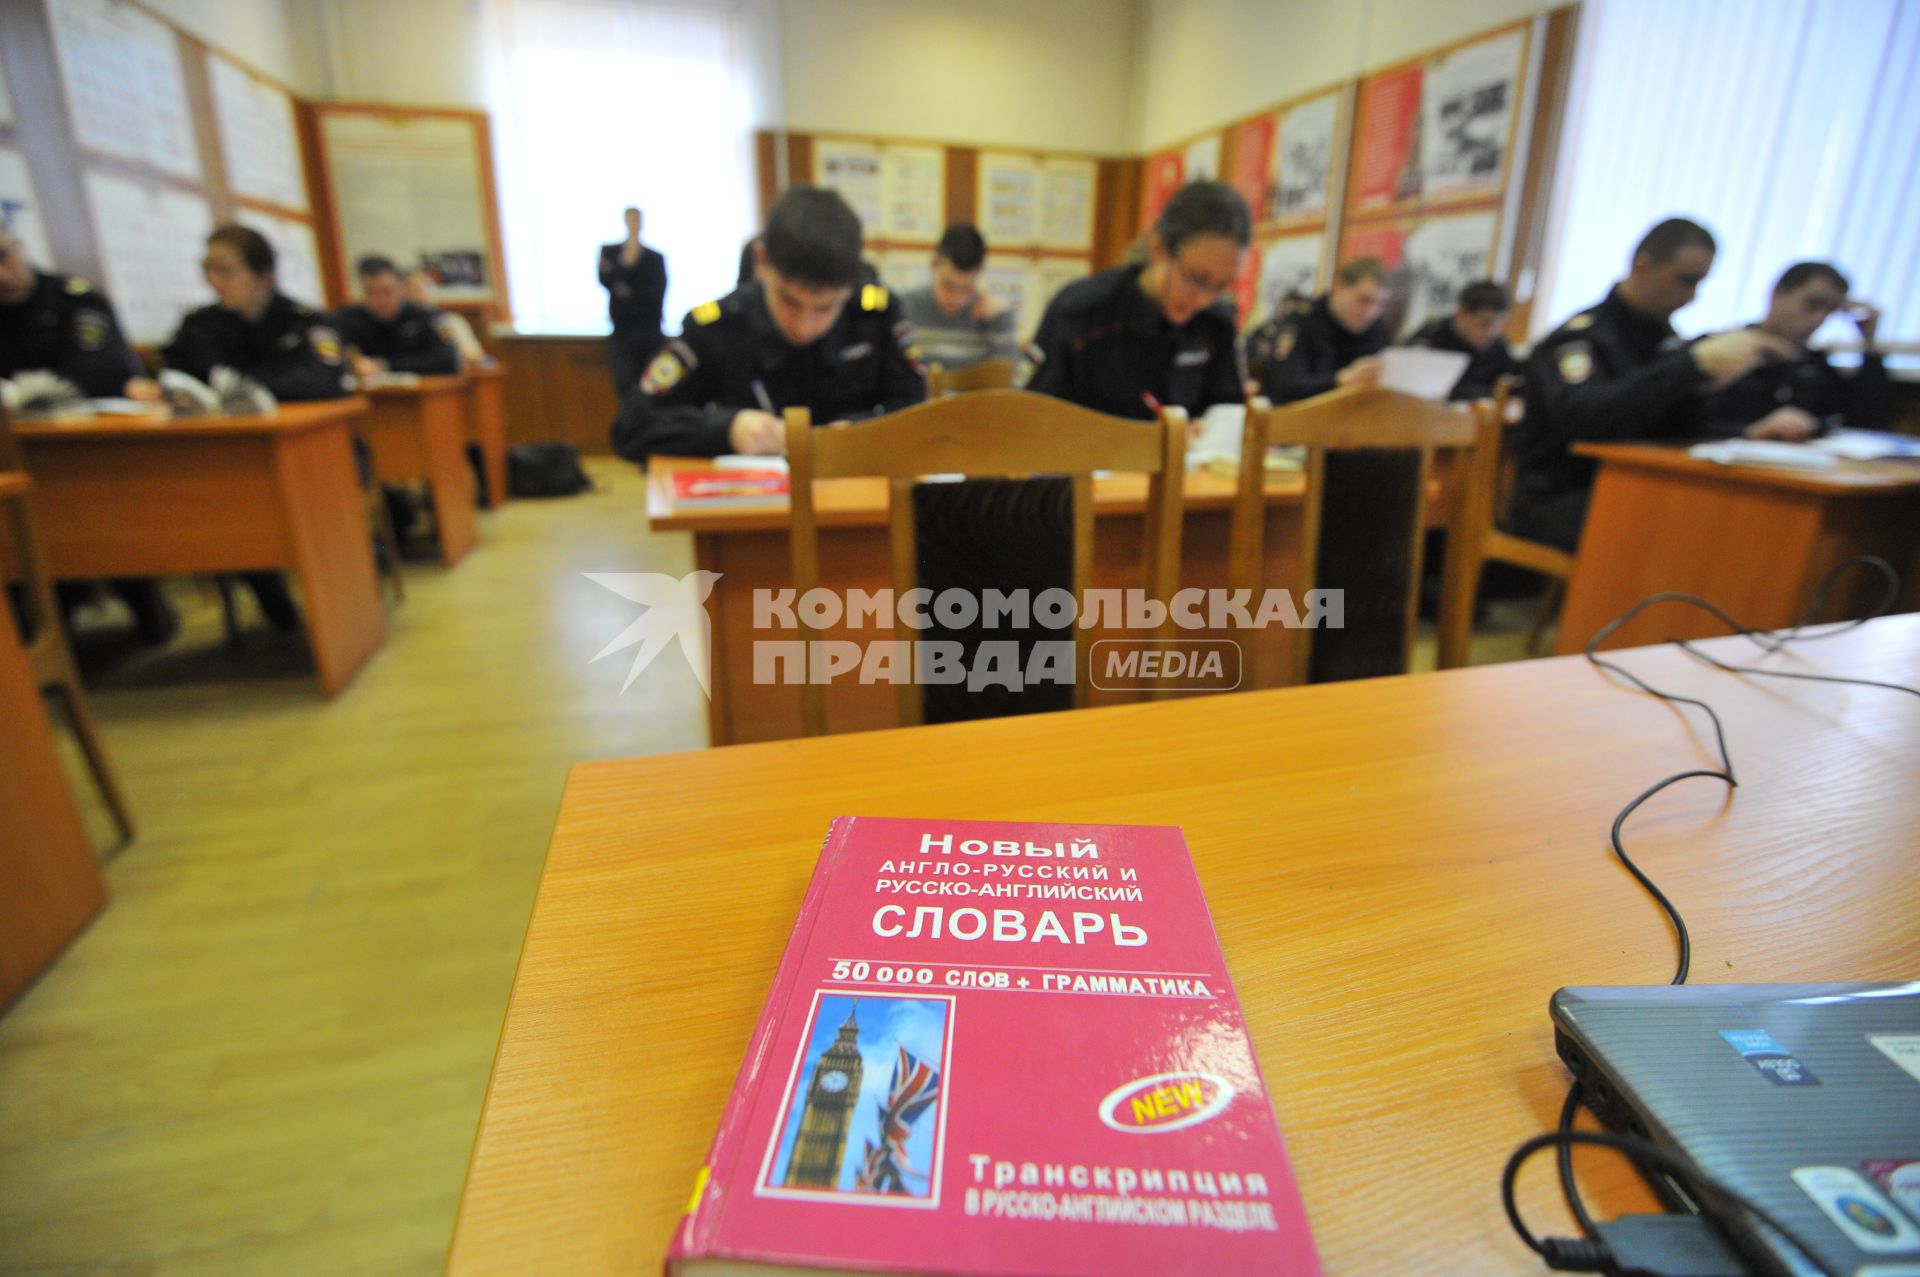 Москва. Сотрудники туристической полиции проходят подготовку, включающую курсы иностранных языков и правила общения с туристами.